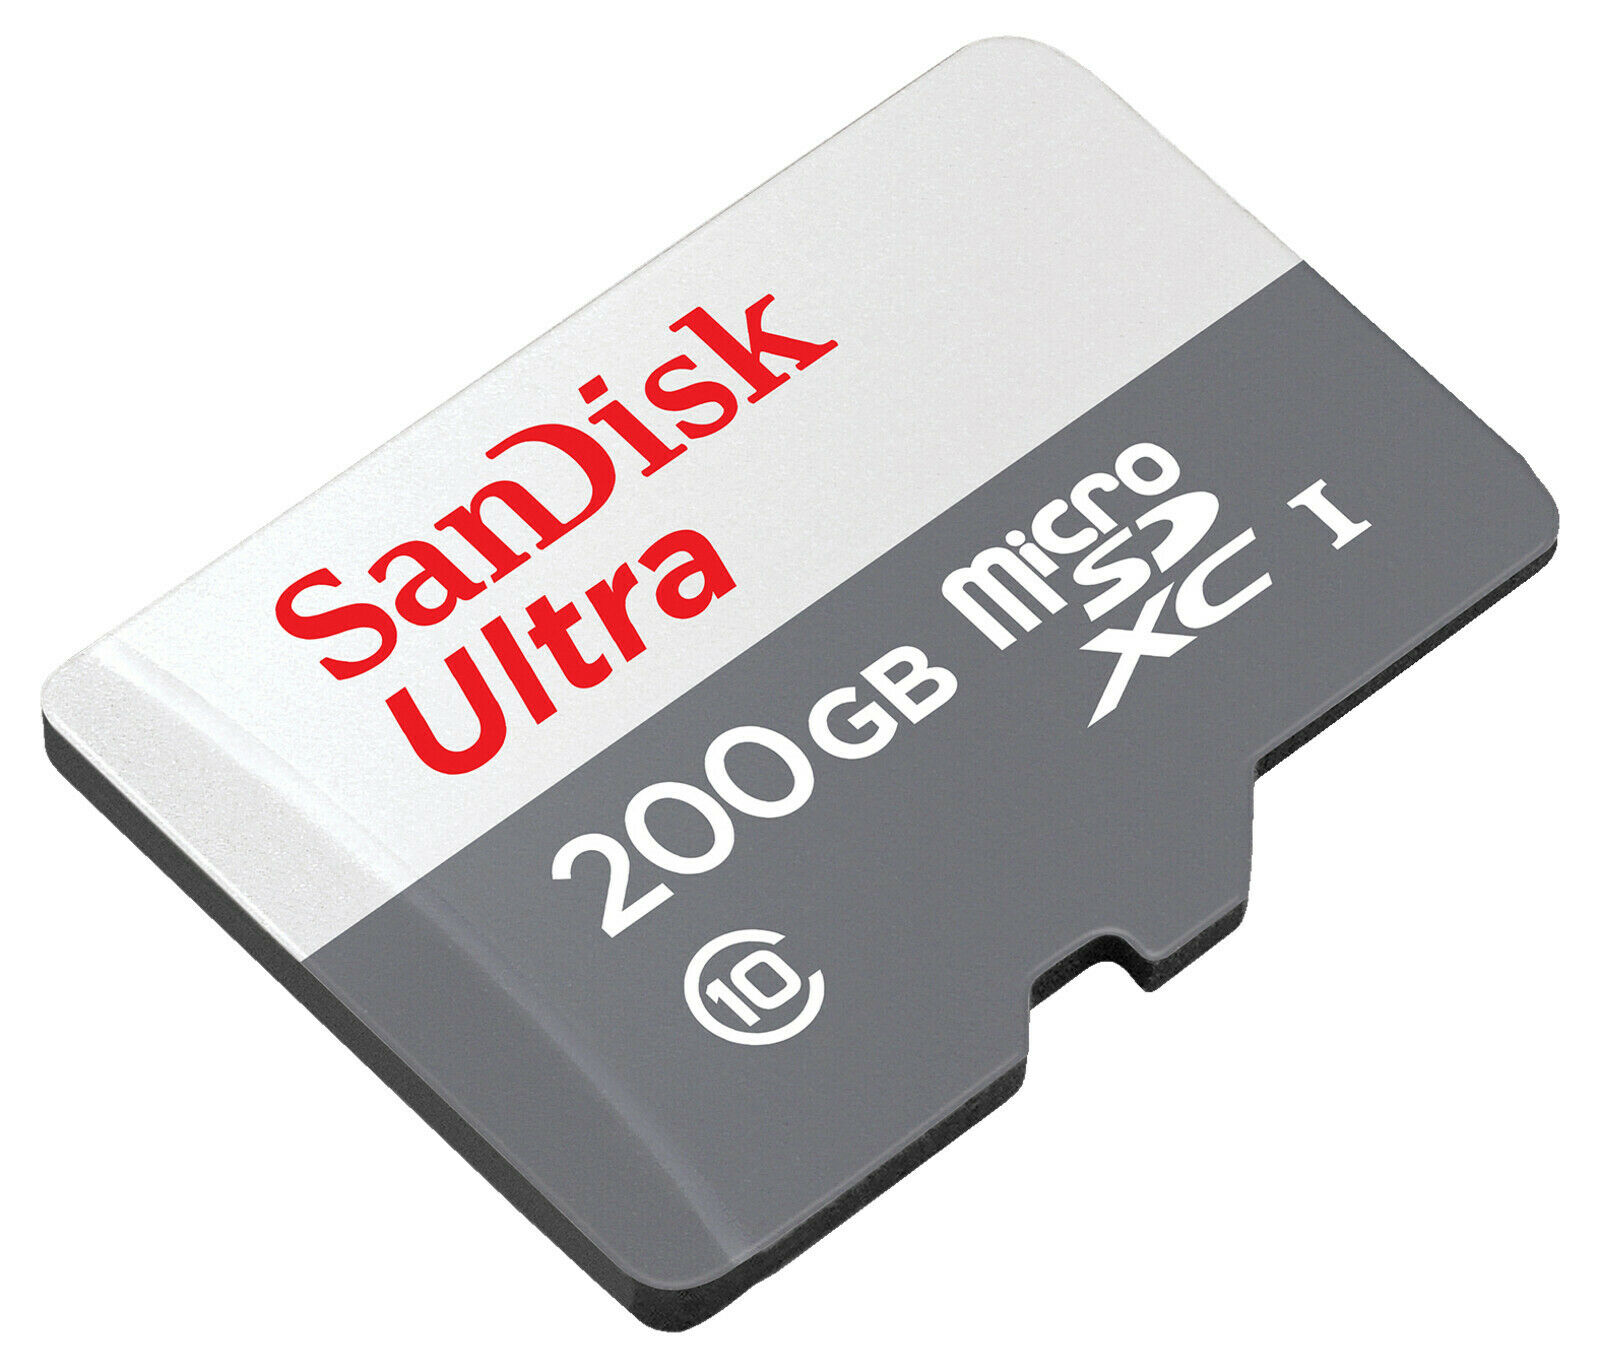 Bild zu 200 GB Sandisk micro SDCX Speicherkarte für 19,99€ (Vergleich: 25,99€)